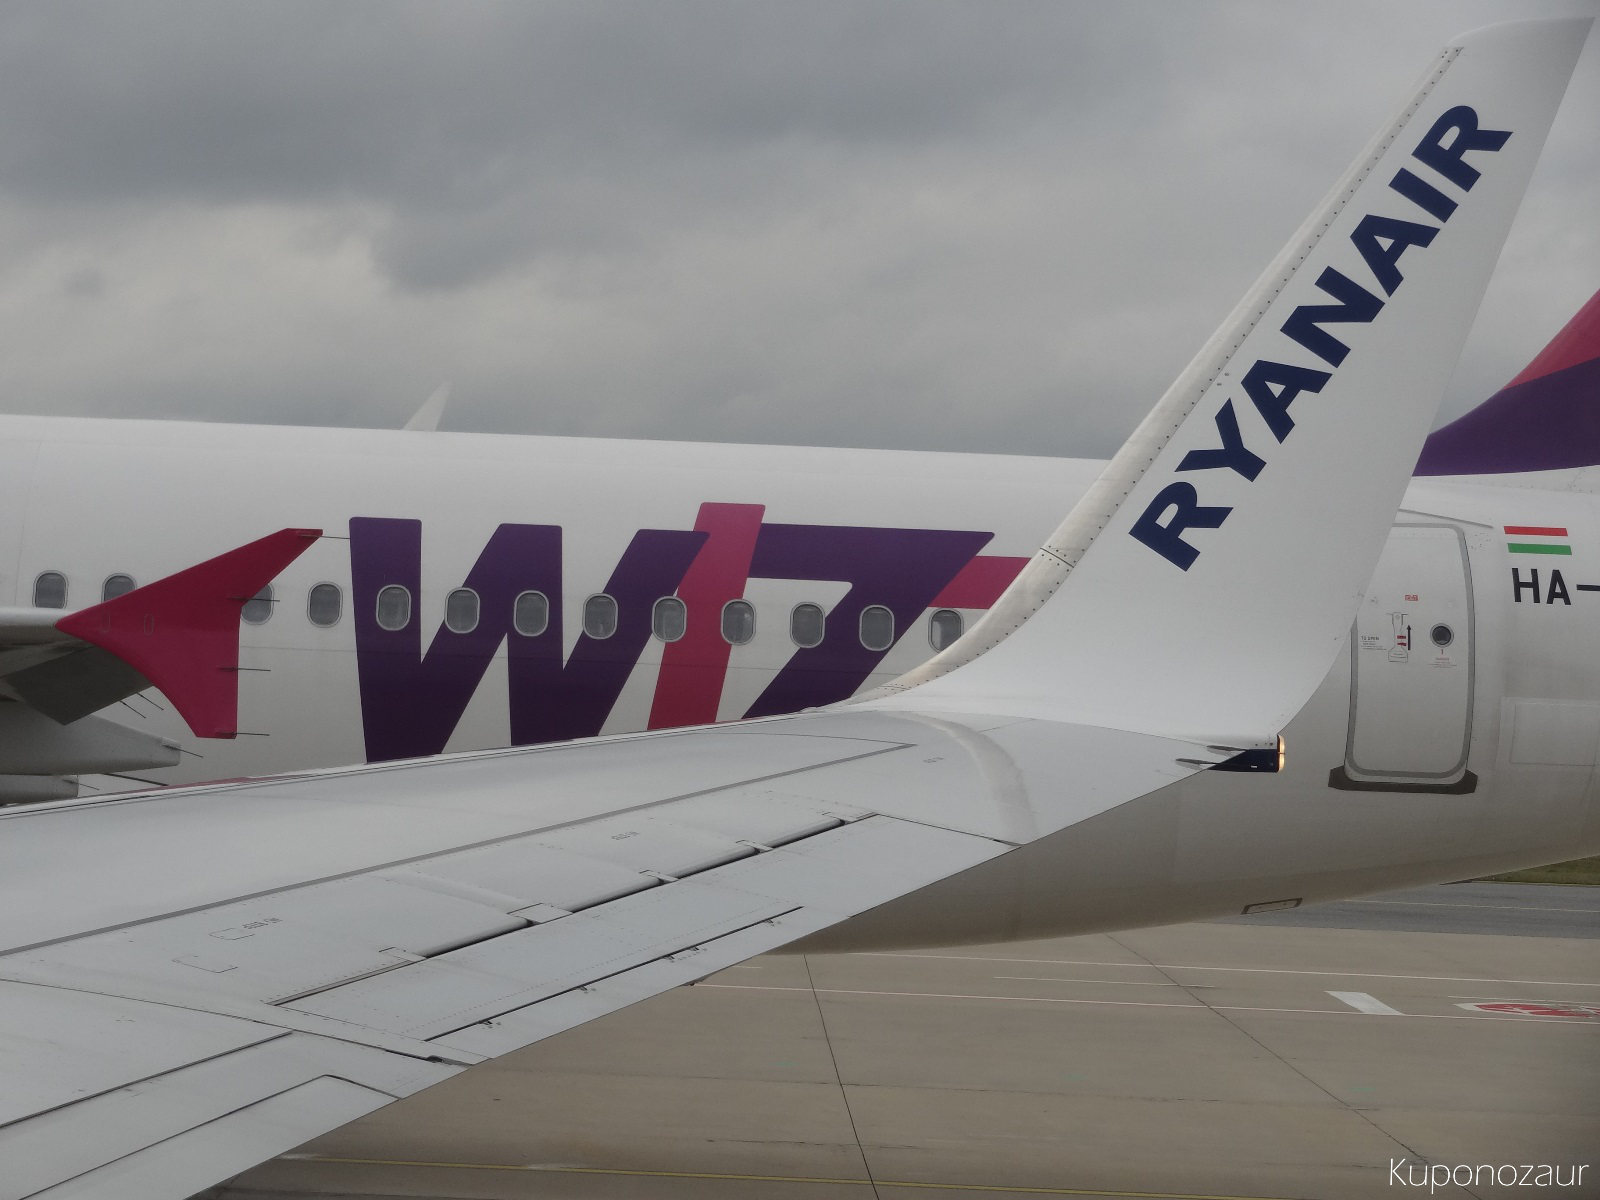 Konkurencja samoloty Wizzair i Ryanair